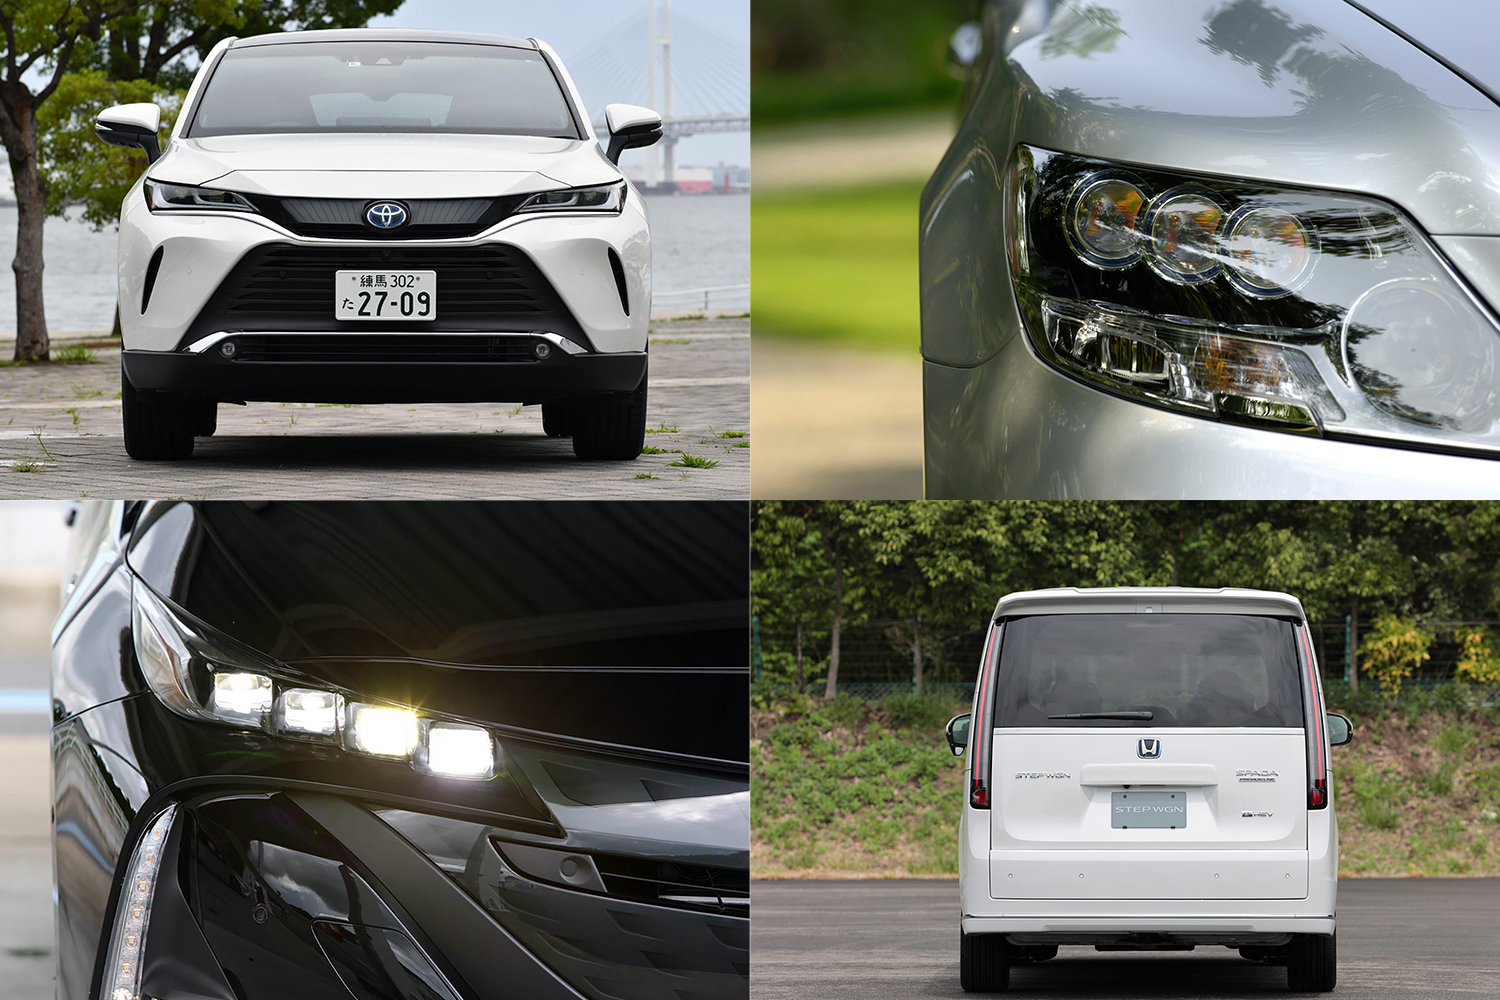 LEDヘッドライトが普及したことによるカーデザインの変化とは